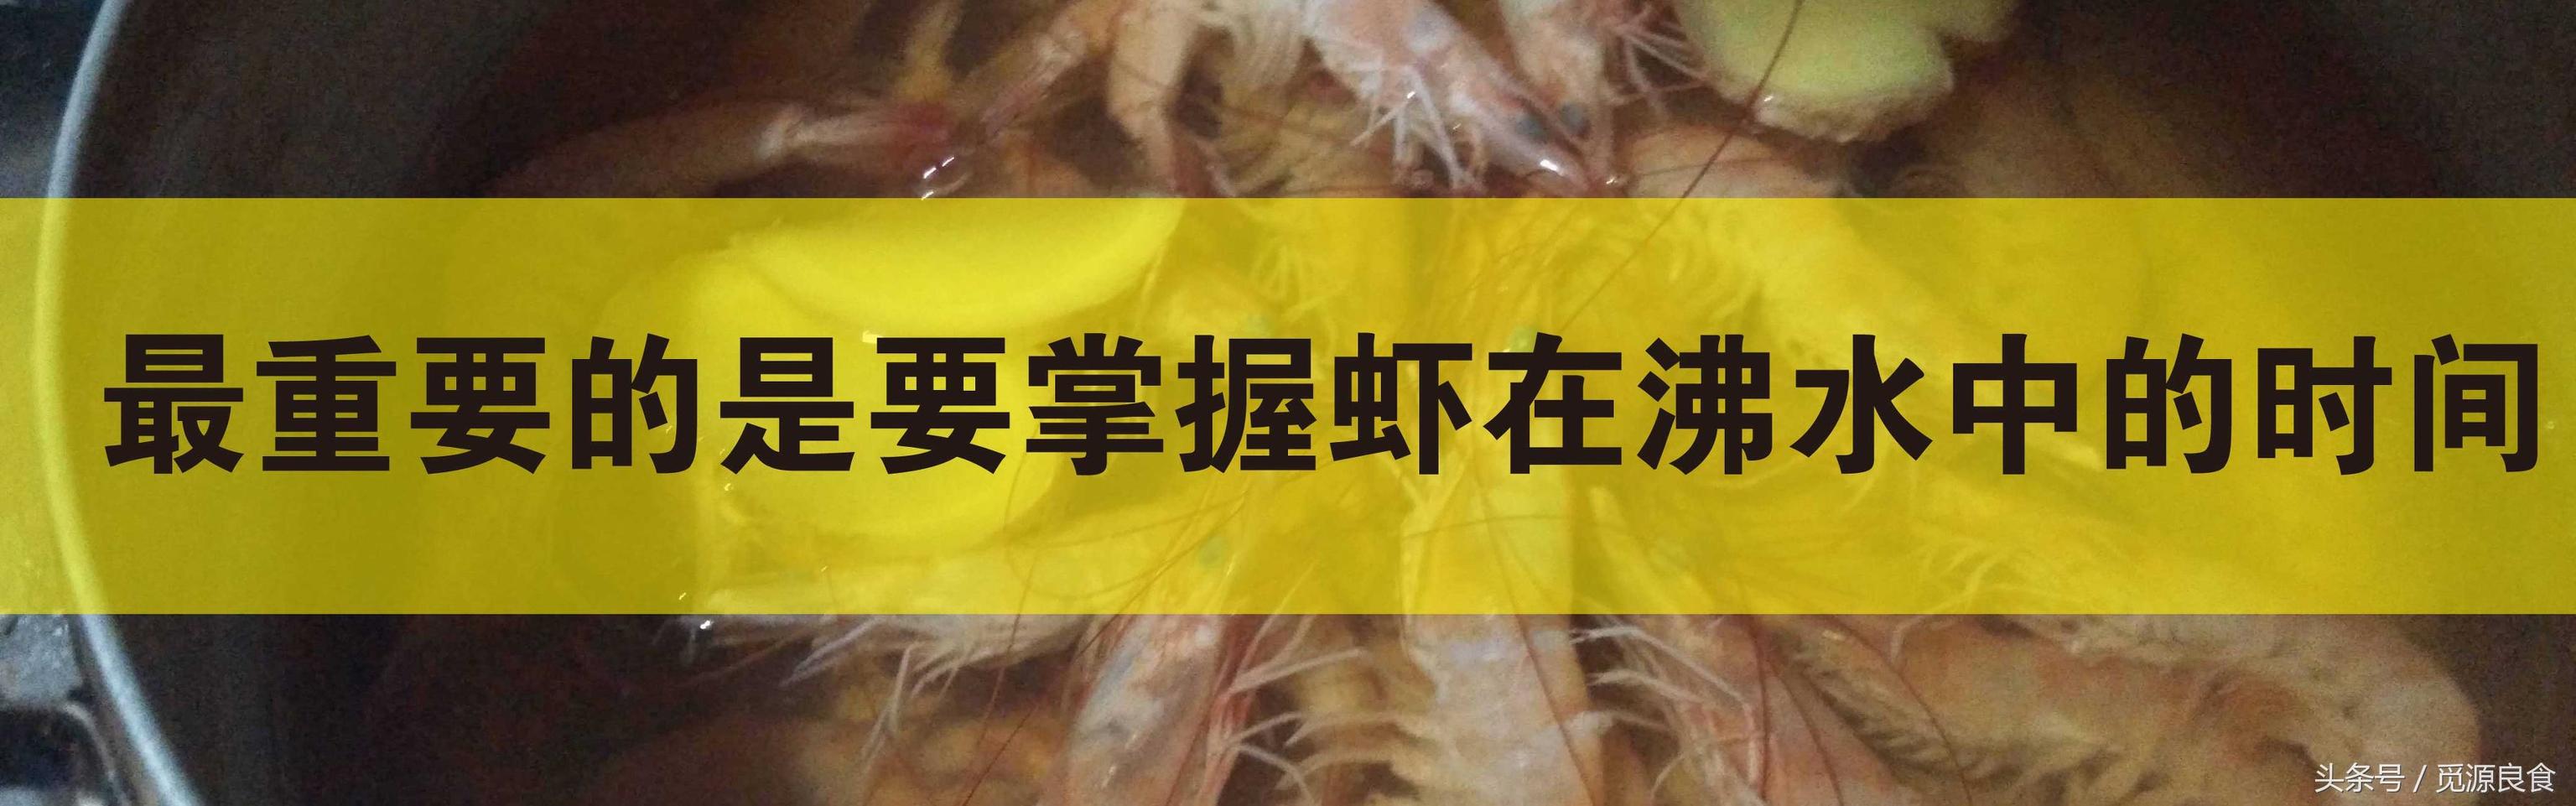 白灼基围虾怎么做好吃？调料、蘸料如何制作、煮虾的时间也是学问